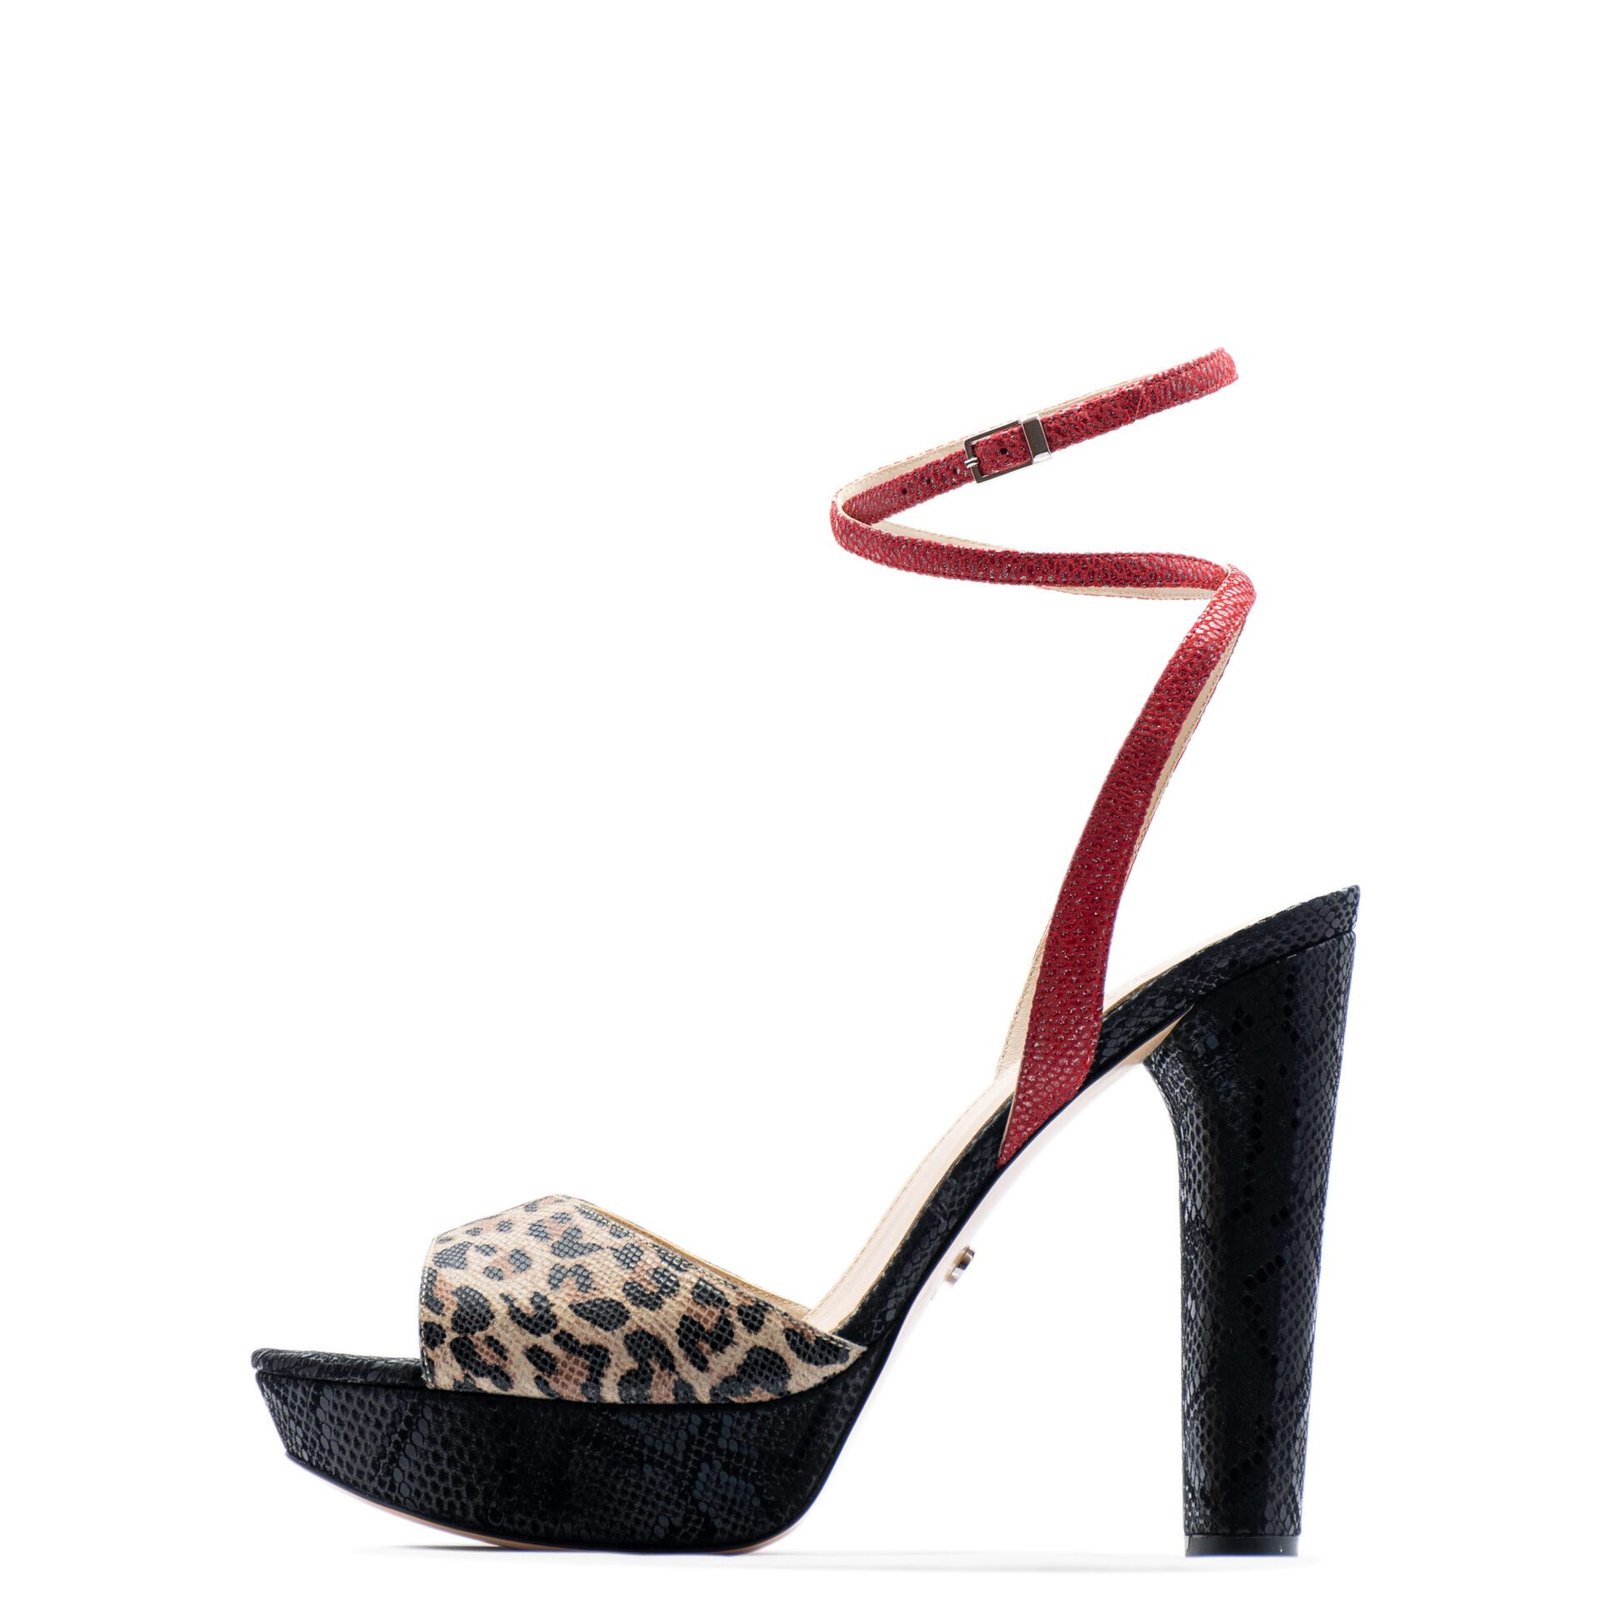 Leopard wedding heels for men and women